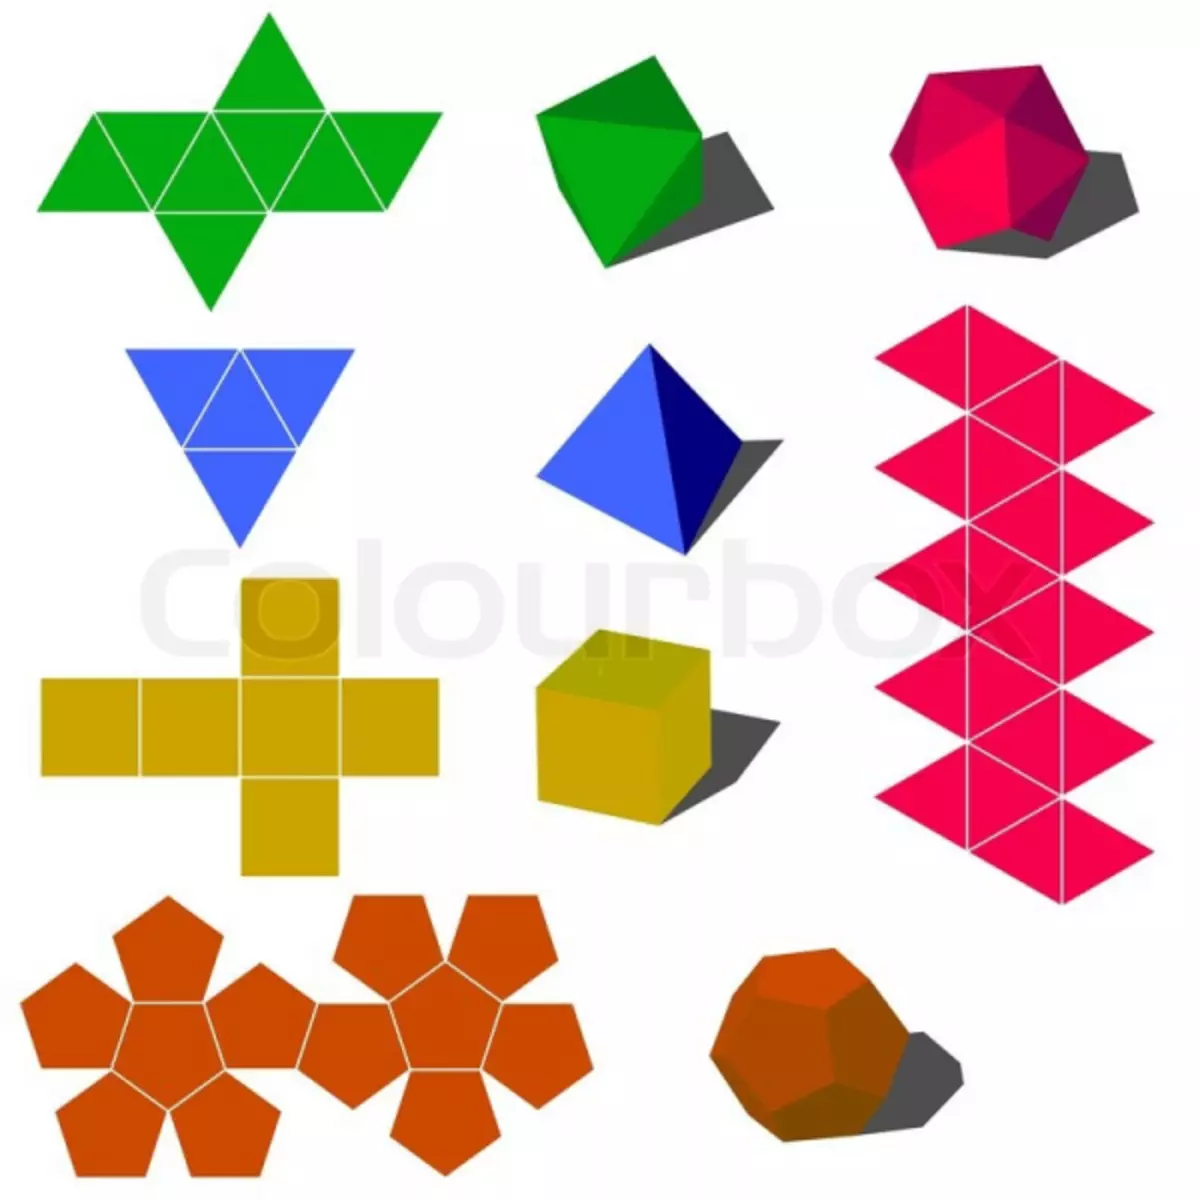 కాగితం నుండి రేఖాగణిత ఆకారాలు: మేము origami టెక్నిక్ లో ఒక క్రాఫ్ట్ తయారు